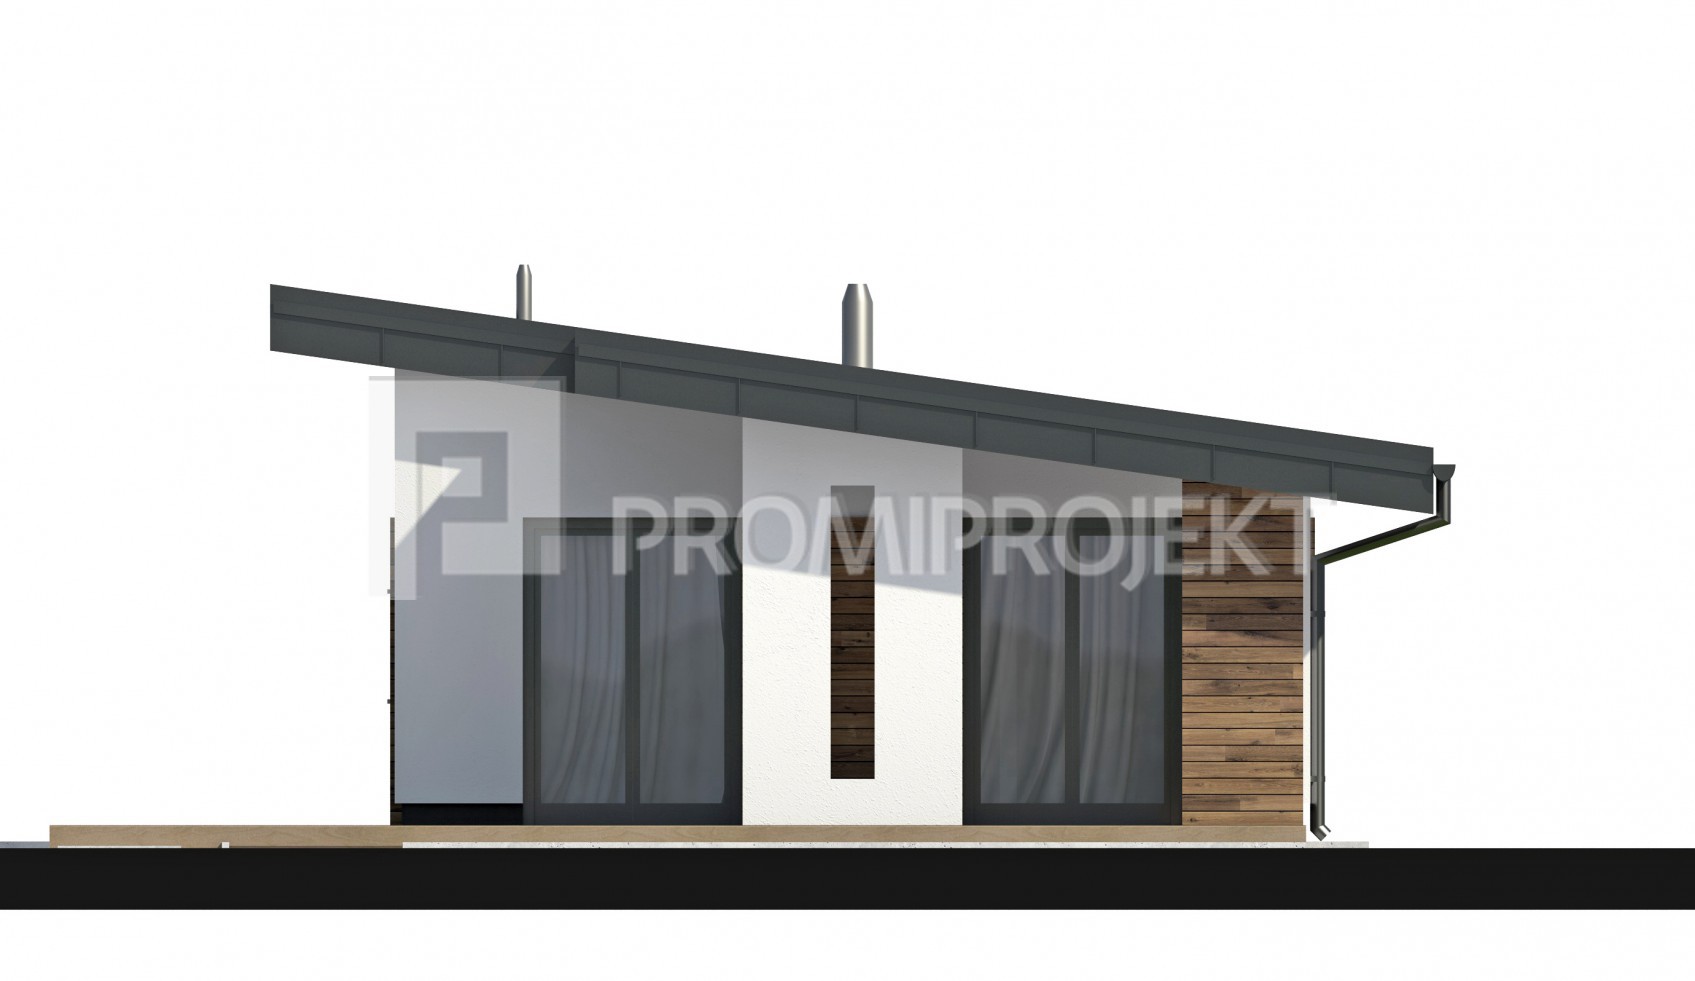 projekt domu Laguna 14, pohľad, zrkadlový 3, PROmiprojekt